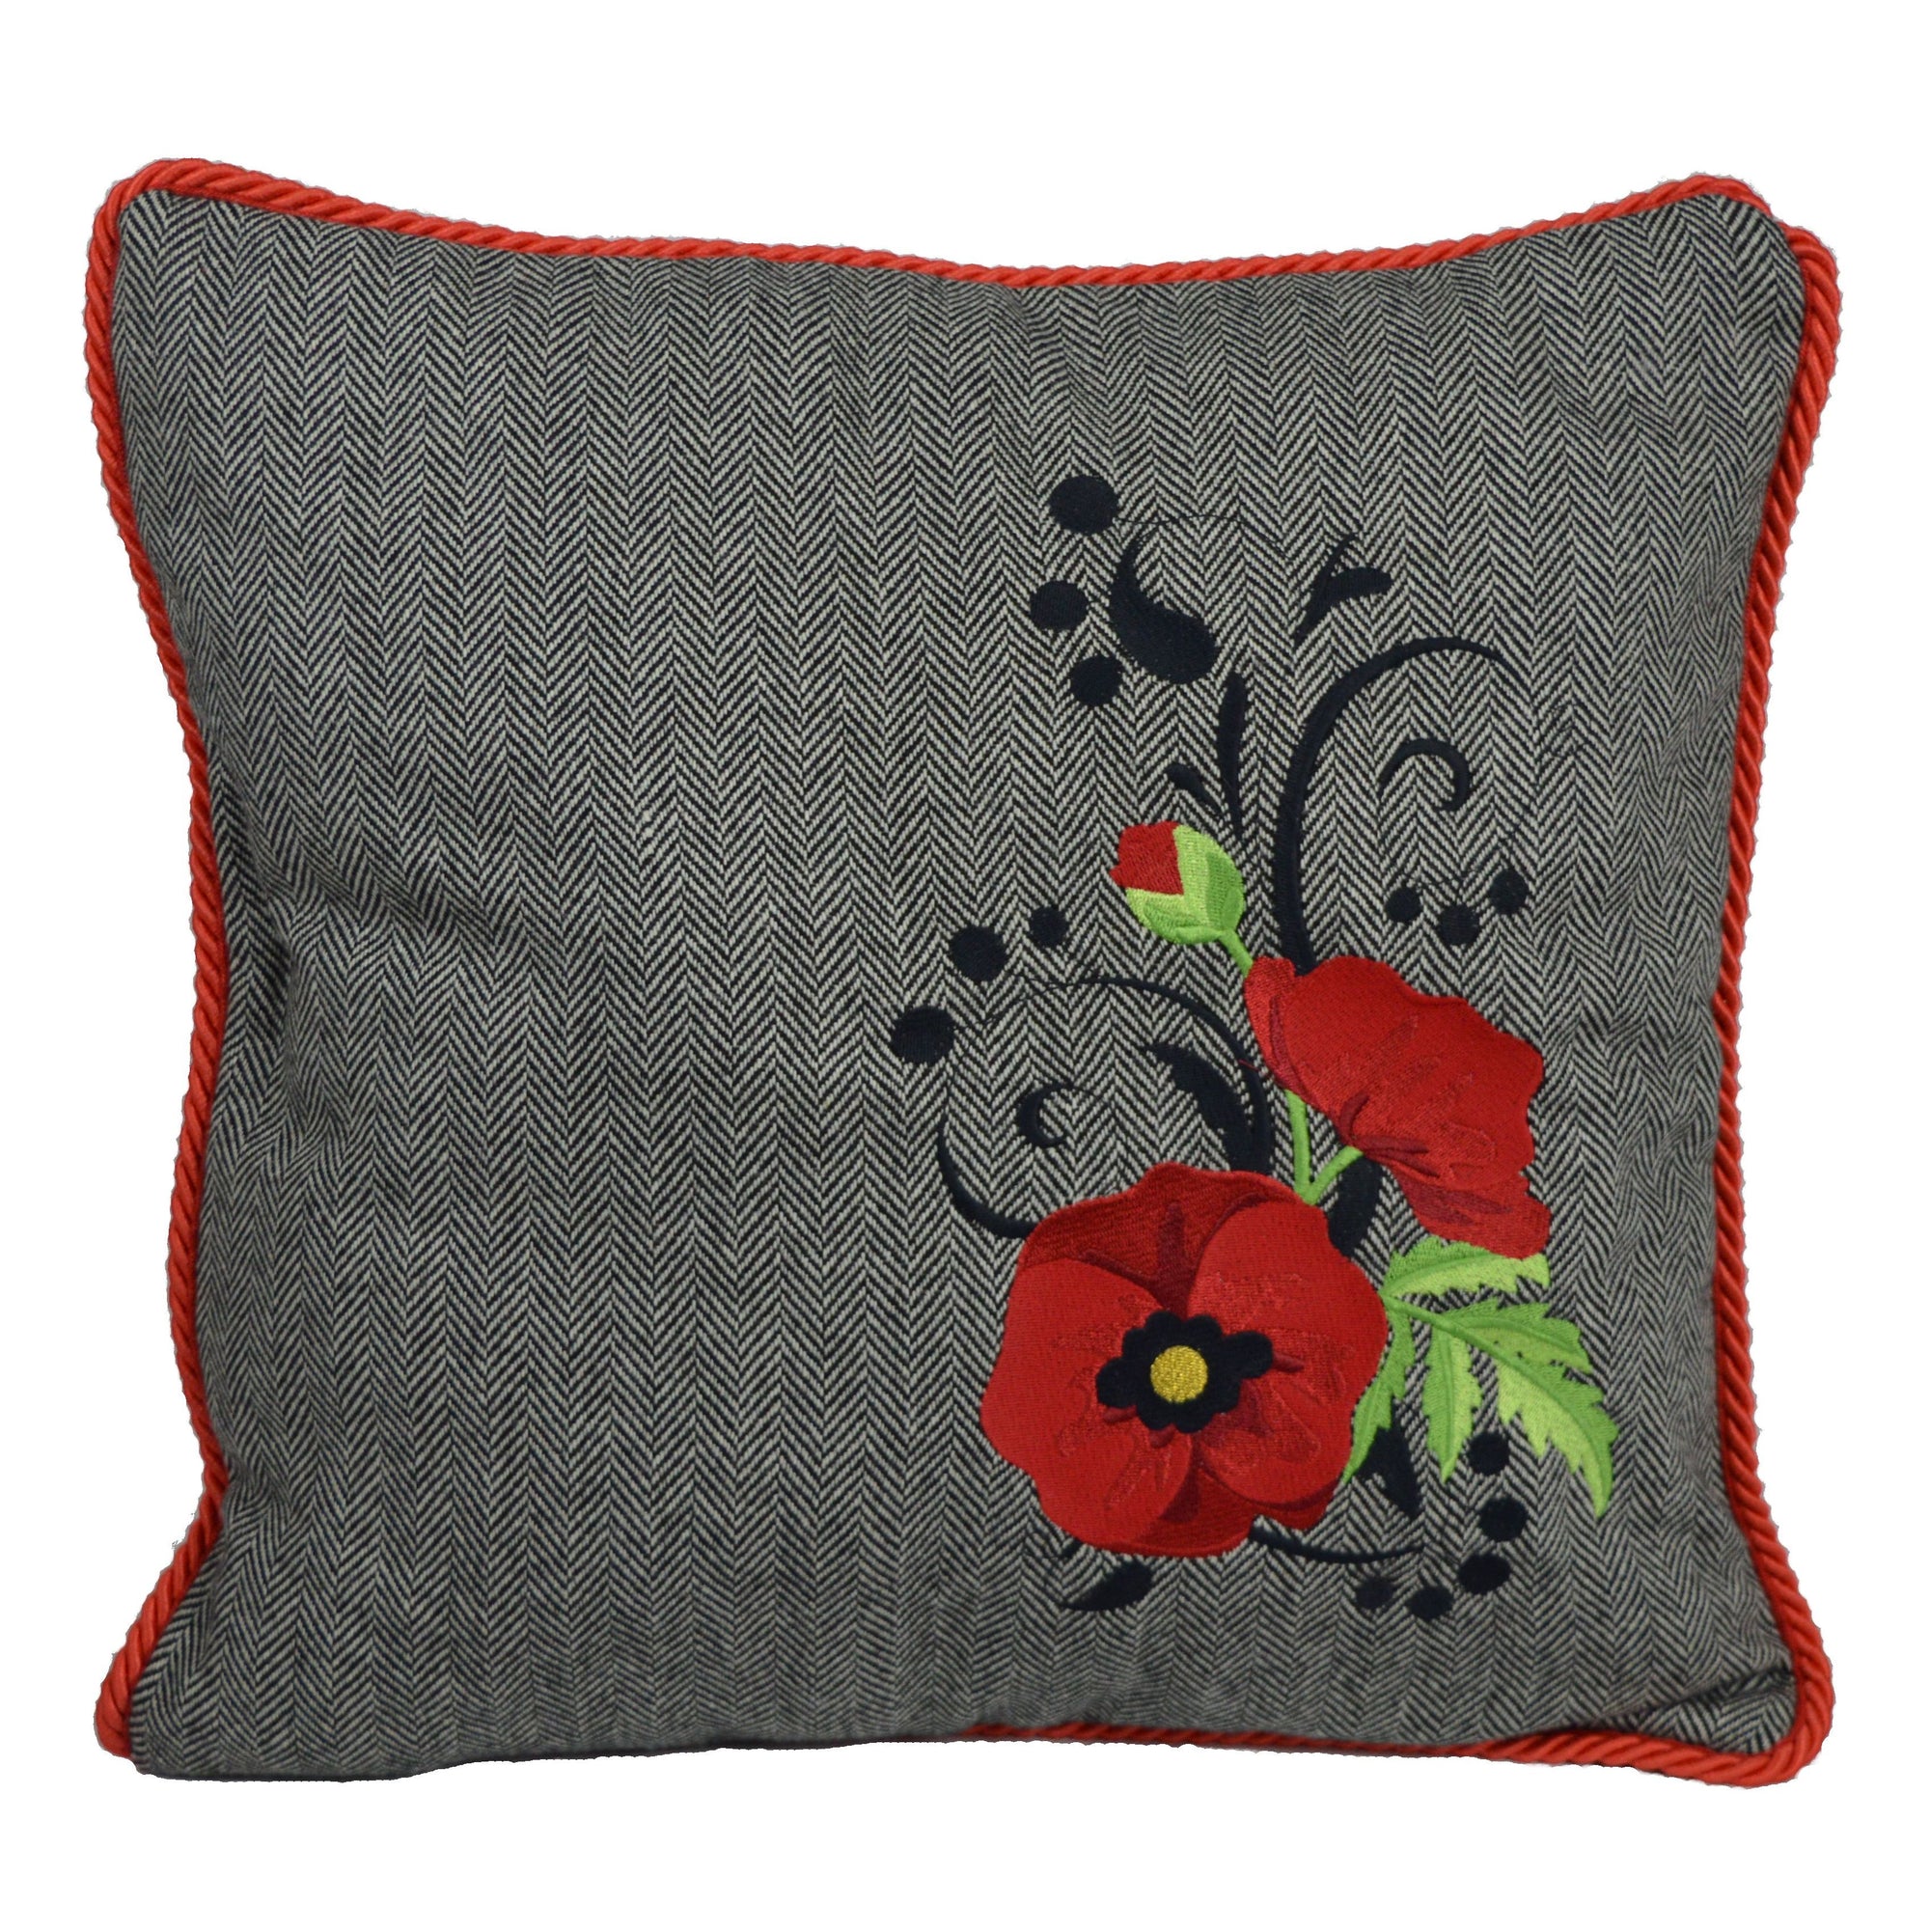 'Poppy' - Irish Tweed Cushion, 16"x16"